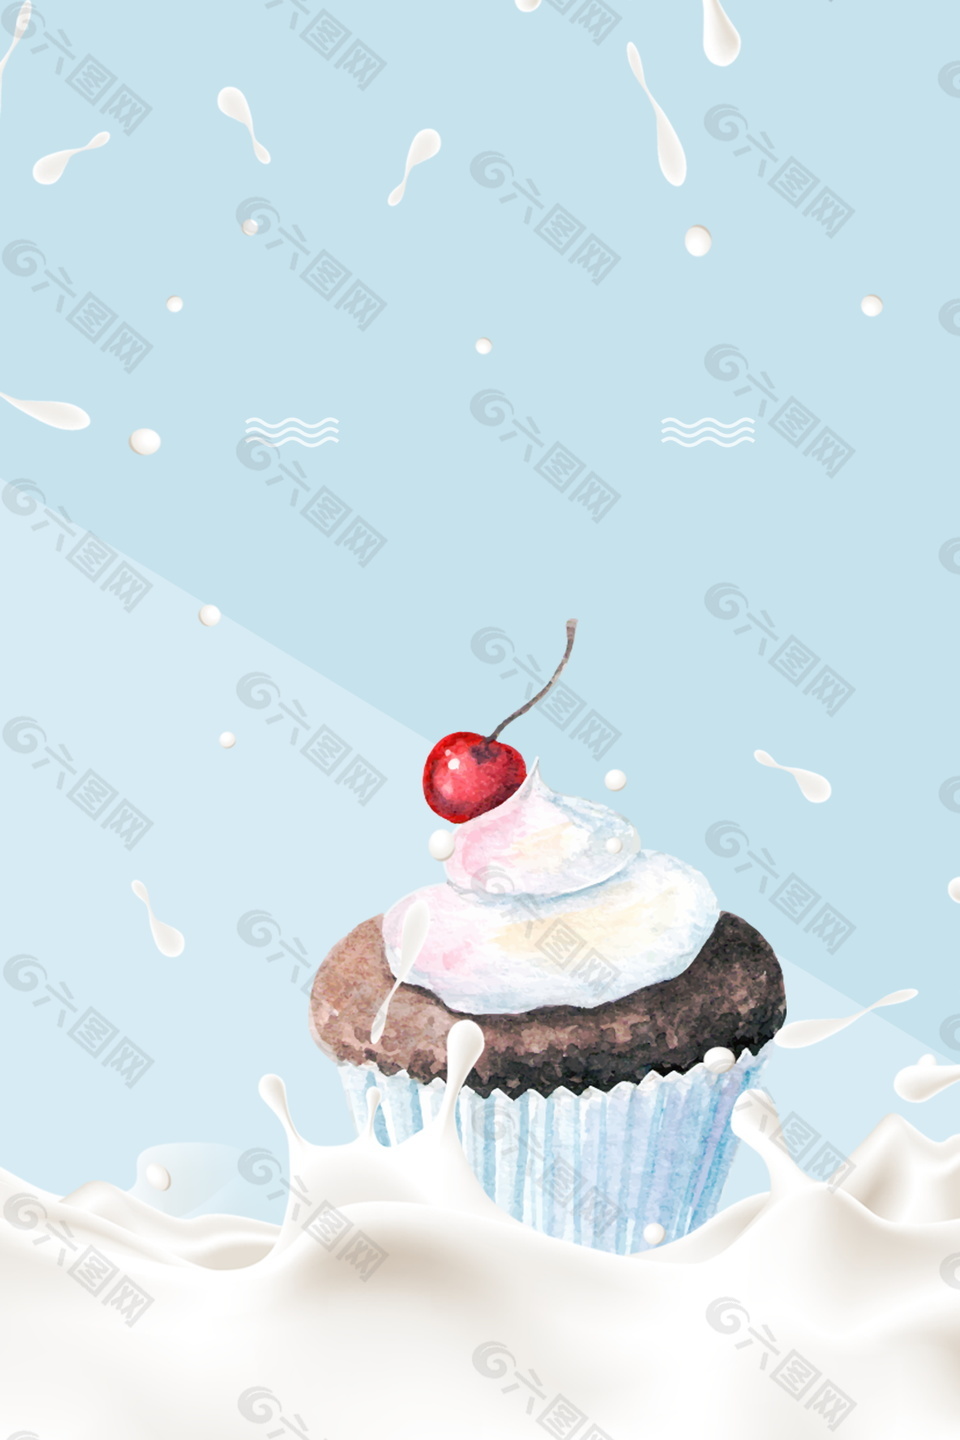 蓝色巧克力奶油樱桃冰淇淋海报背景设计